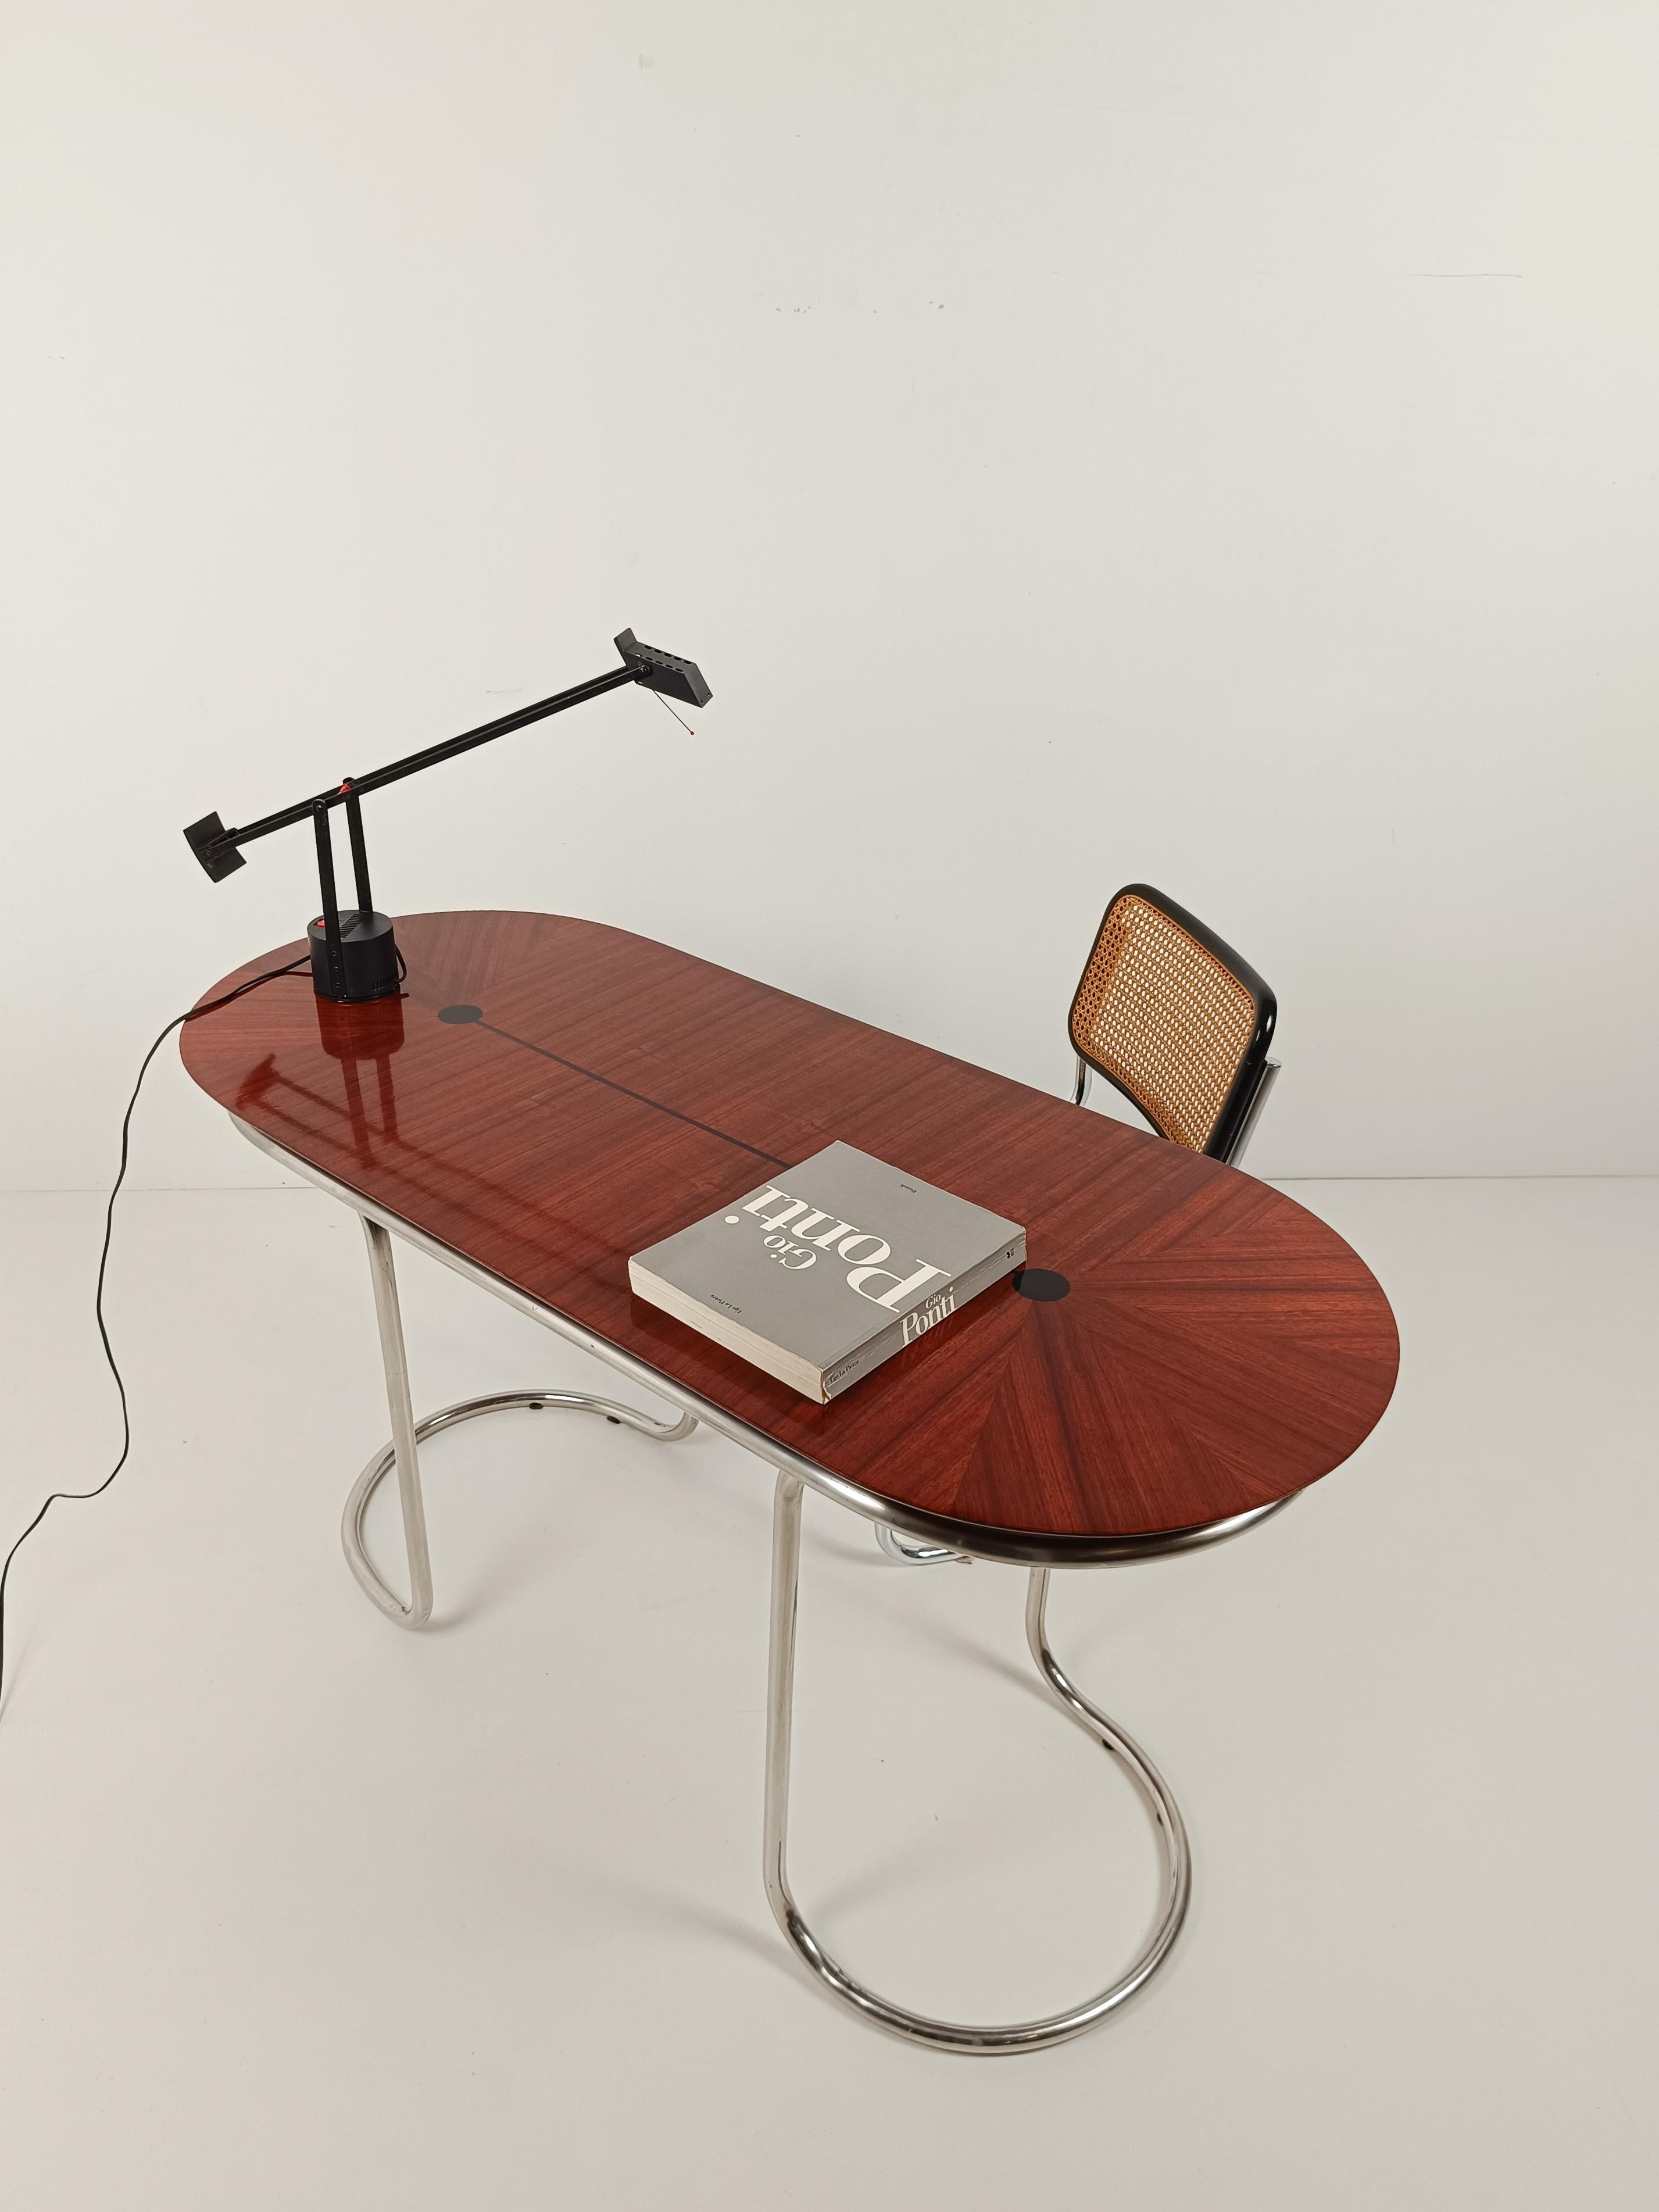 Ein einzigartiges Möbelstück mit einem eleganten und feinen Design. Glauben Sie mir, wenn ich Ihnen sage, dass es im Moment kein anderes ähnliches Möbelstück online zu kaufen gibt.
Dieser Konsolentisch aus den 60er- und 70er-Jahren erinnert an das